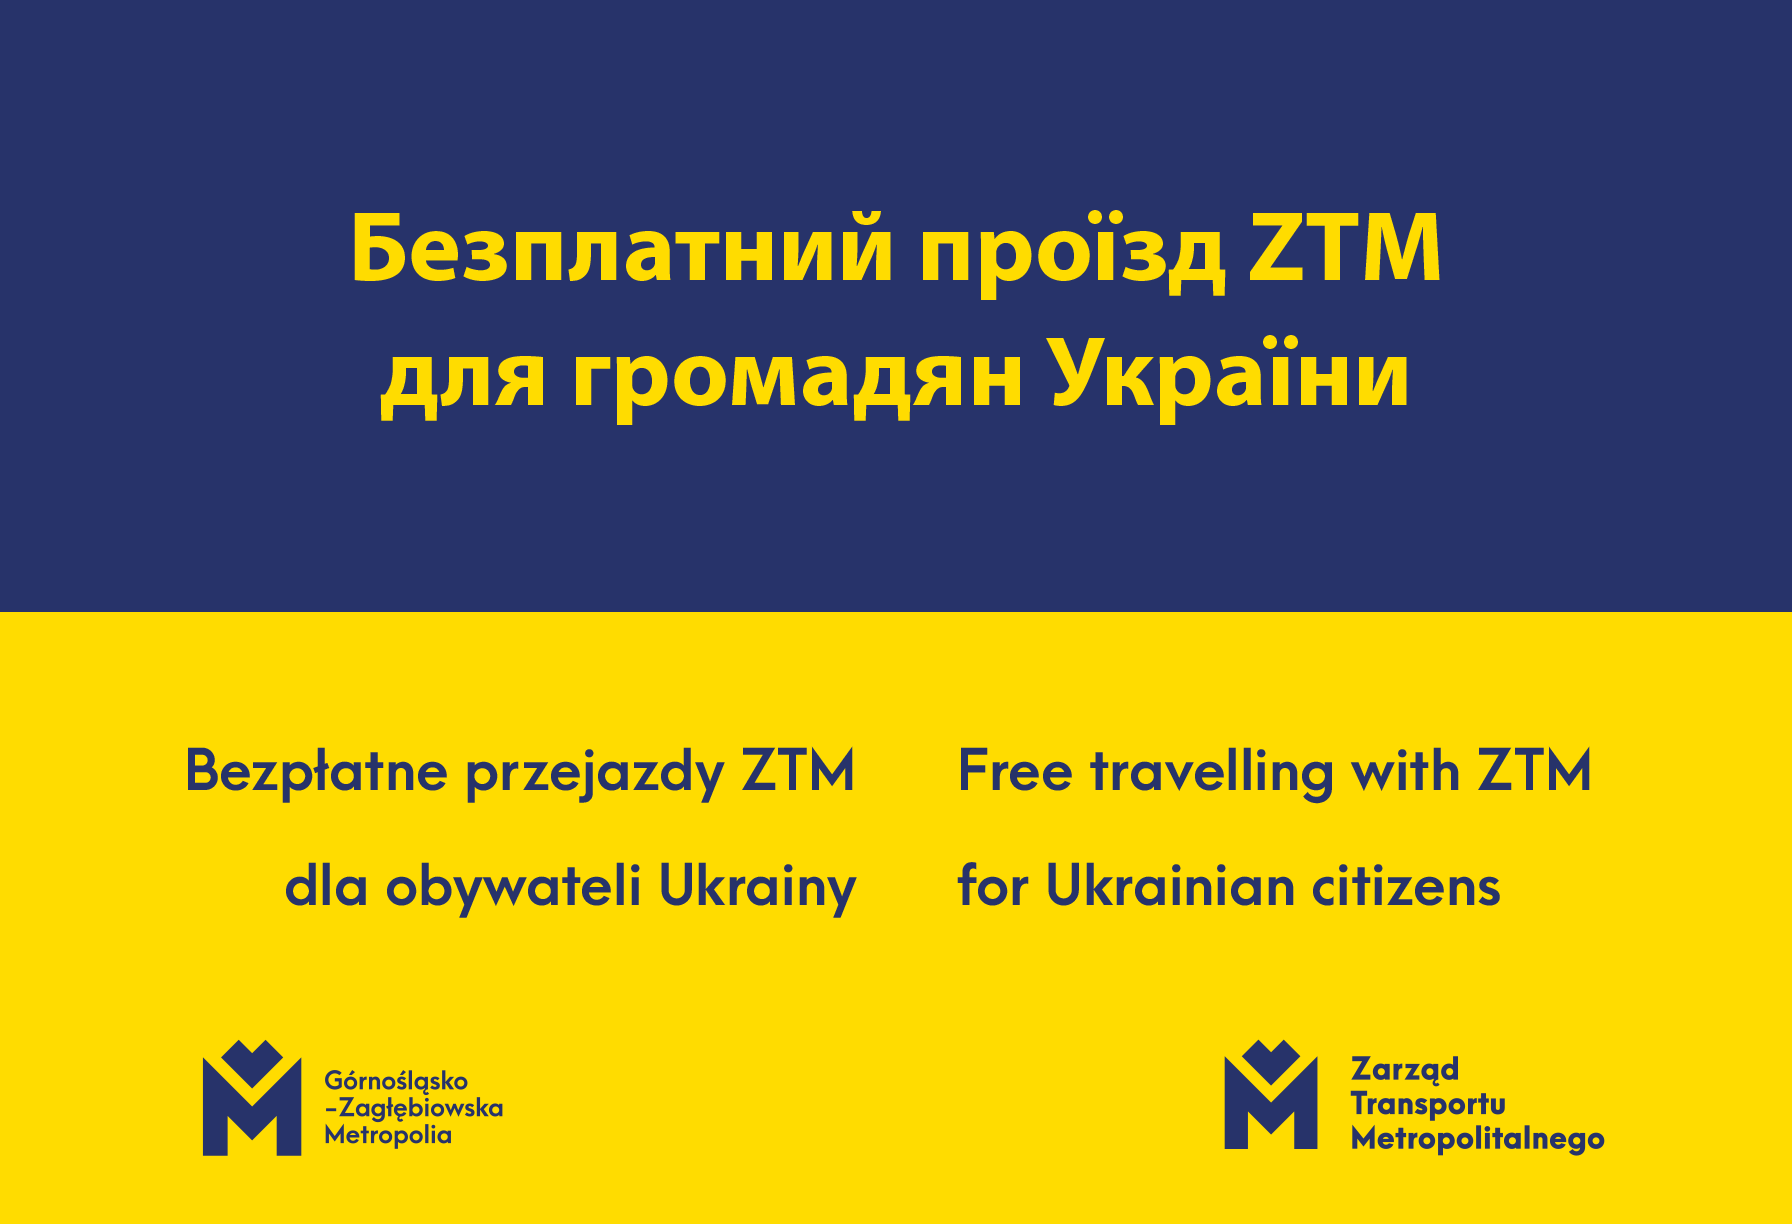 Bezpłatne przejazdy ZTM dla obywateli Ukrainy - Безплатний проїзд ZTM для громадян України 